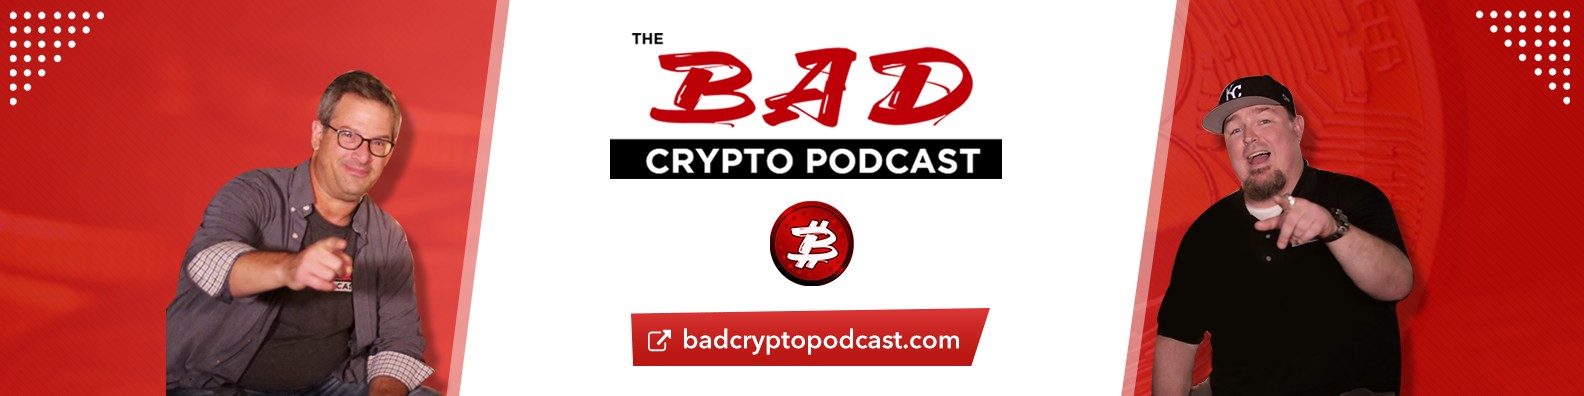 The bad crypto podcast обмен валюты банк возрождение сегодня